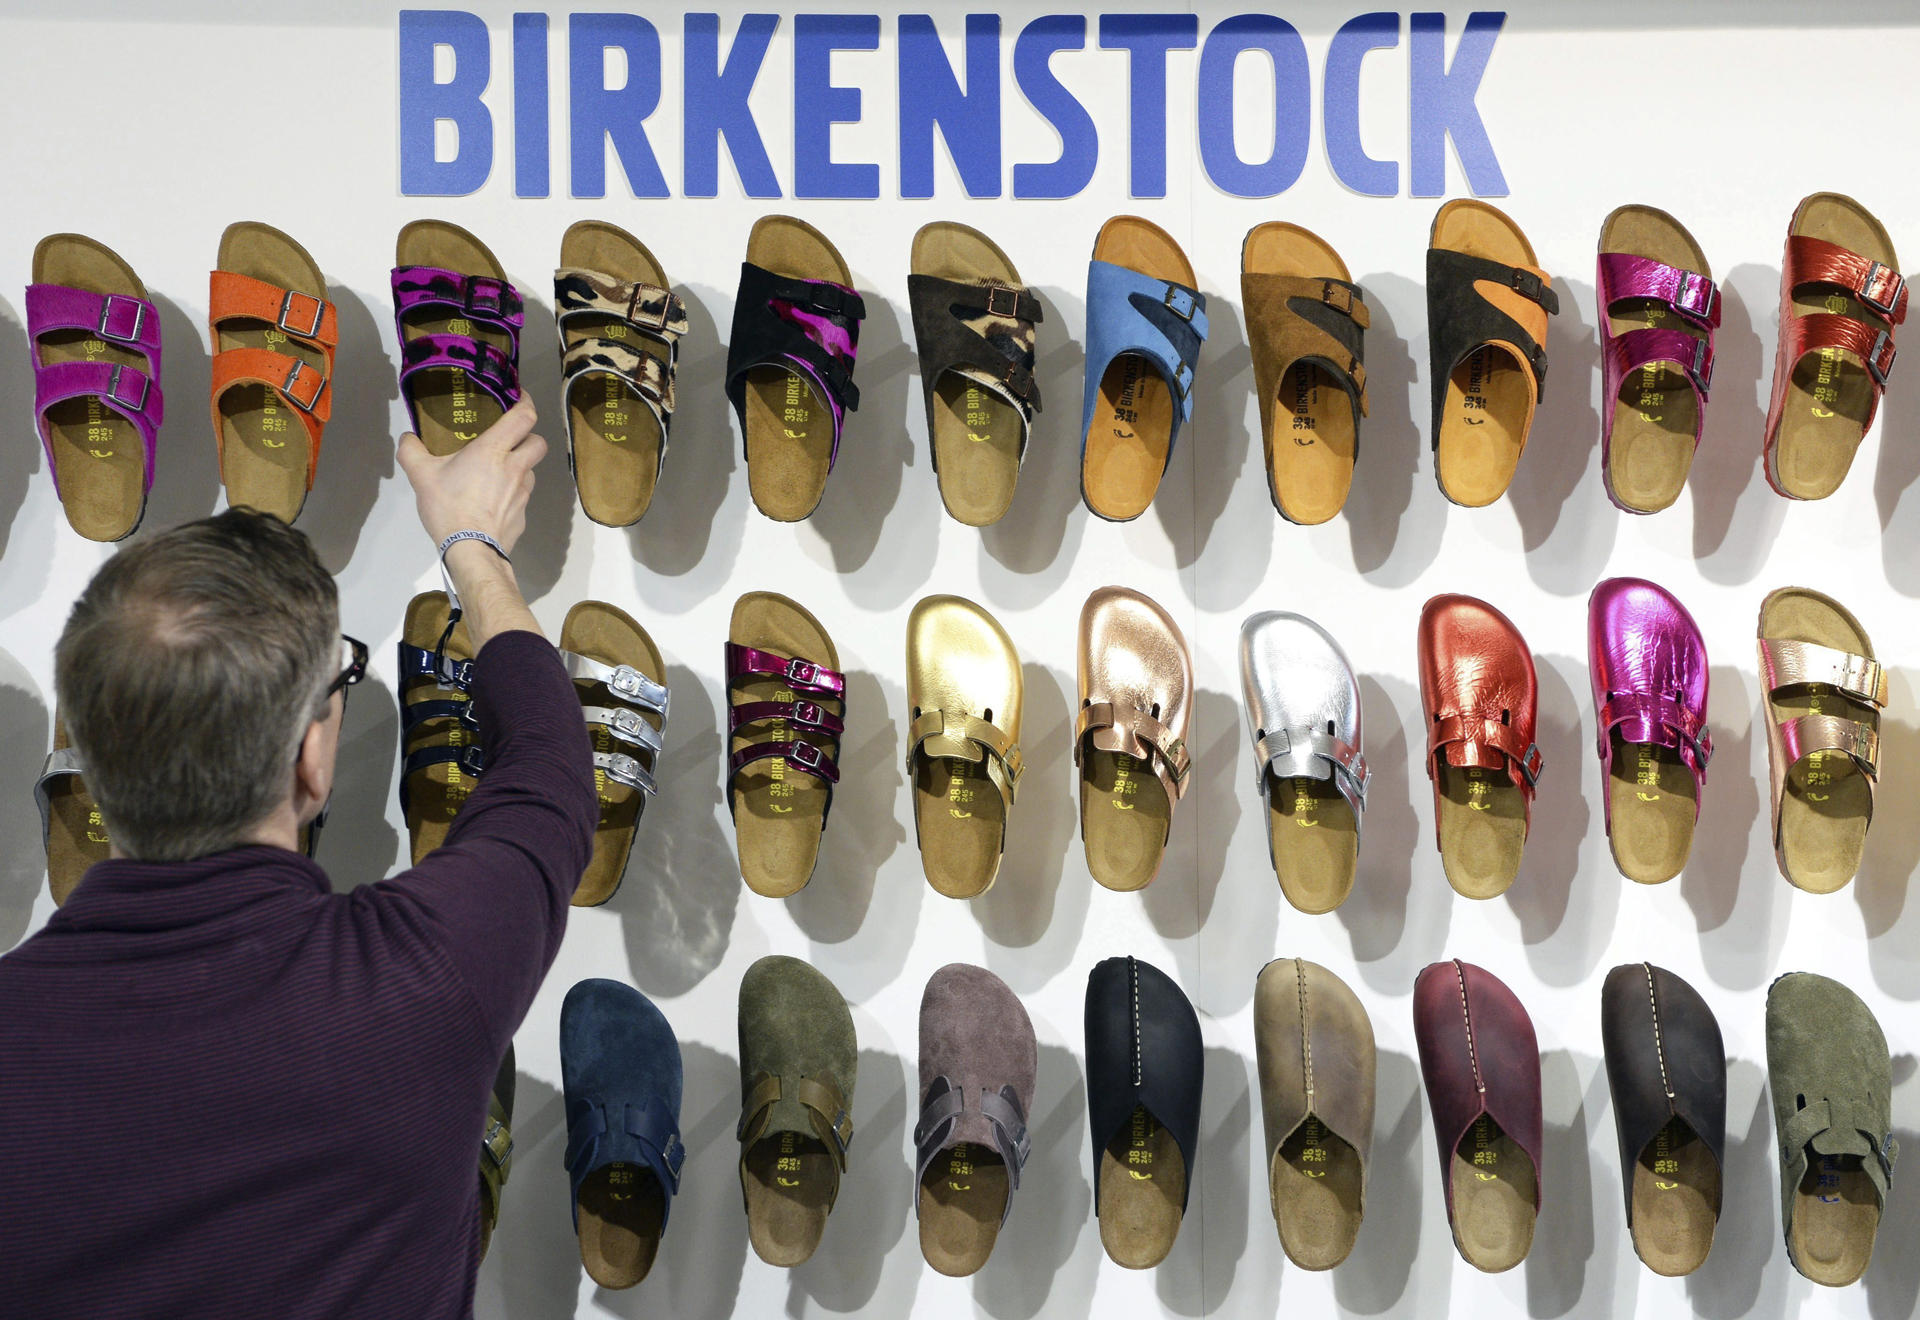 Un empleado organiza zapatos de la marca Birkenstock, en una fotografía de archivo. EPA/SOEREN STACHE